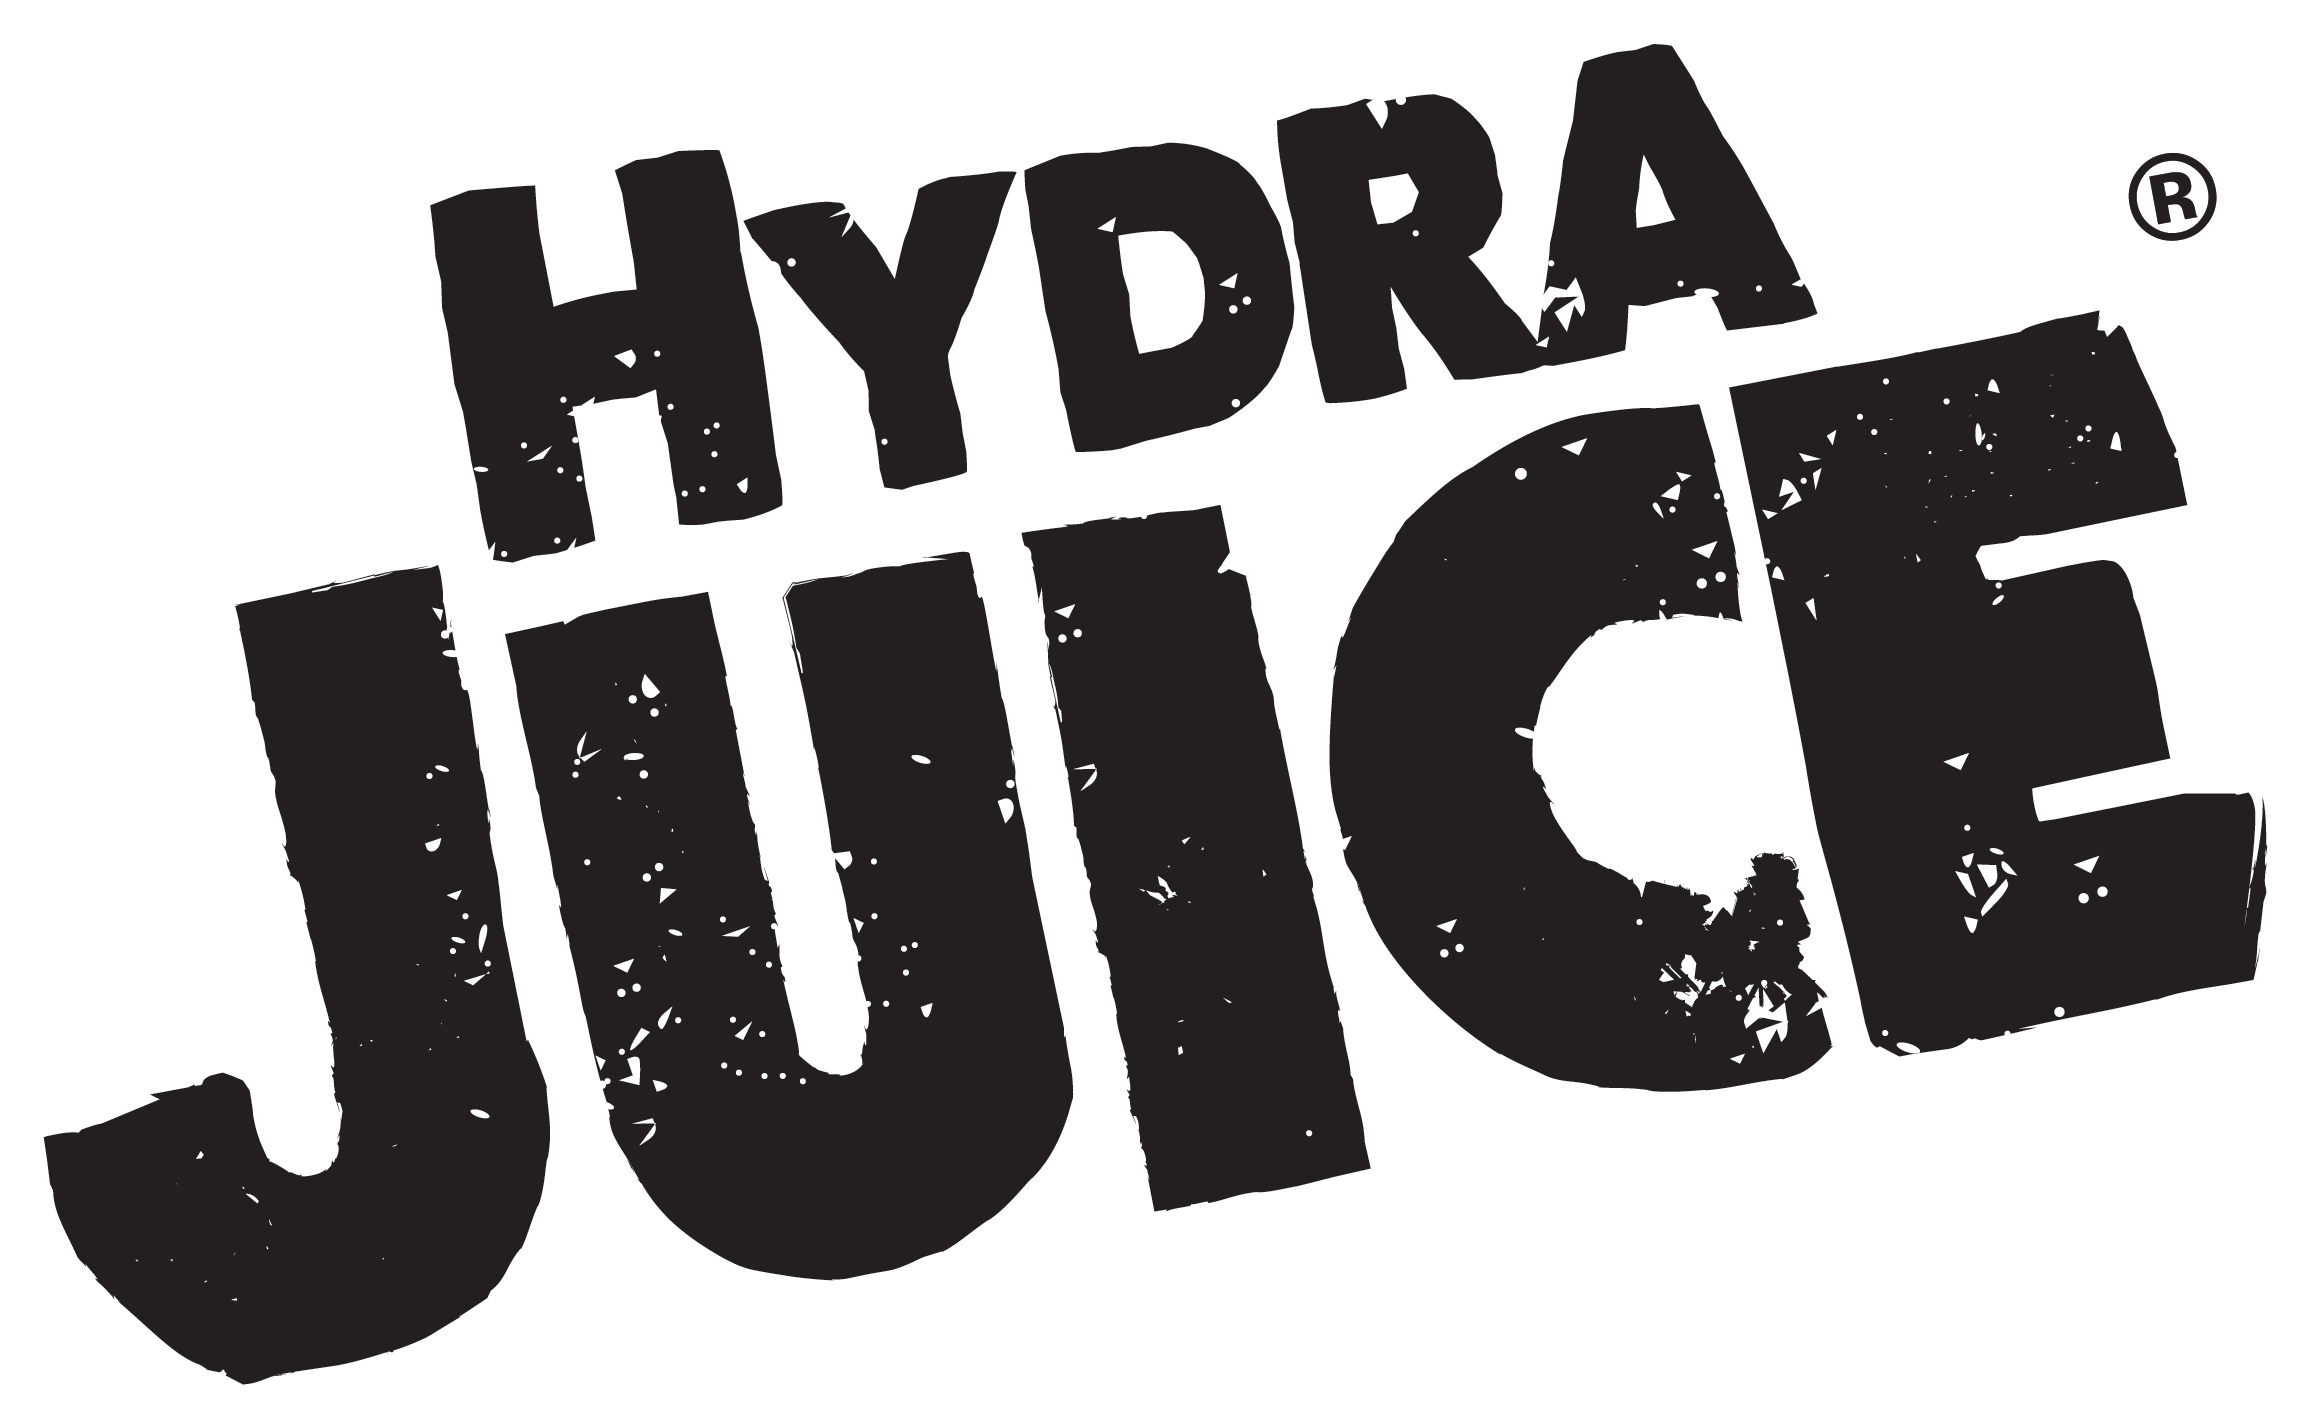 Hydra logo PNG imagen Transparente